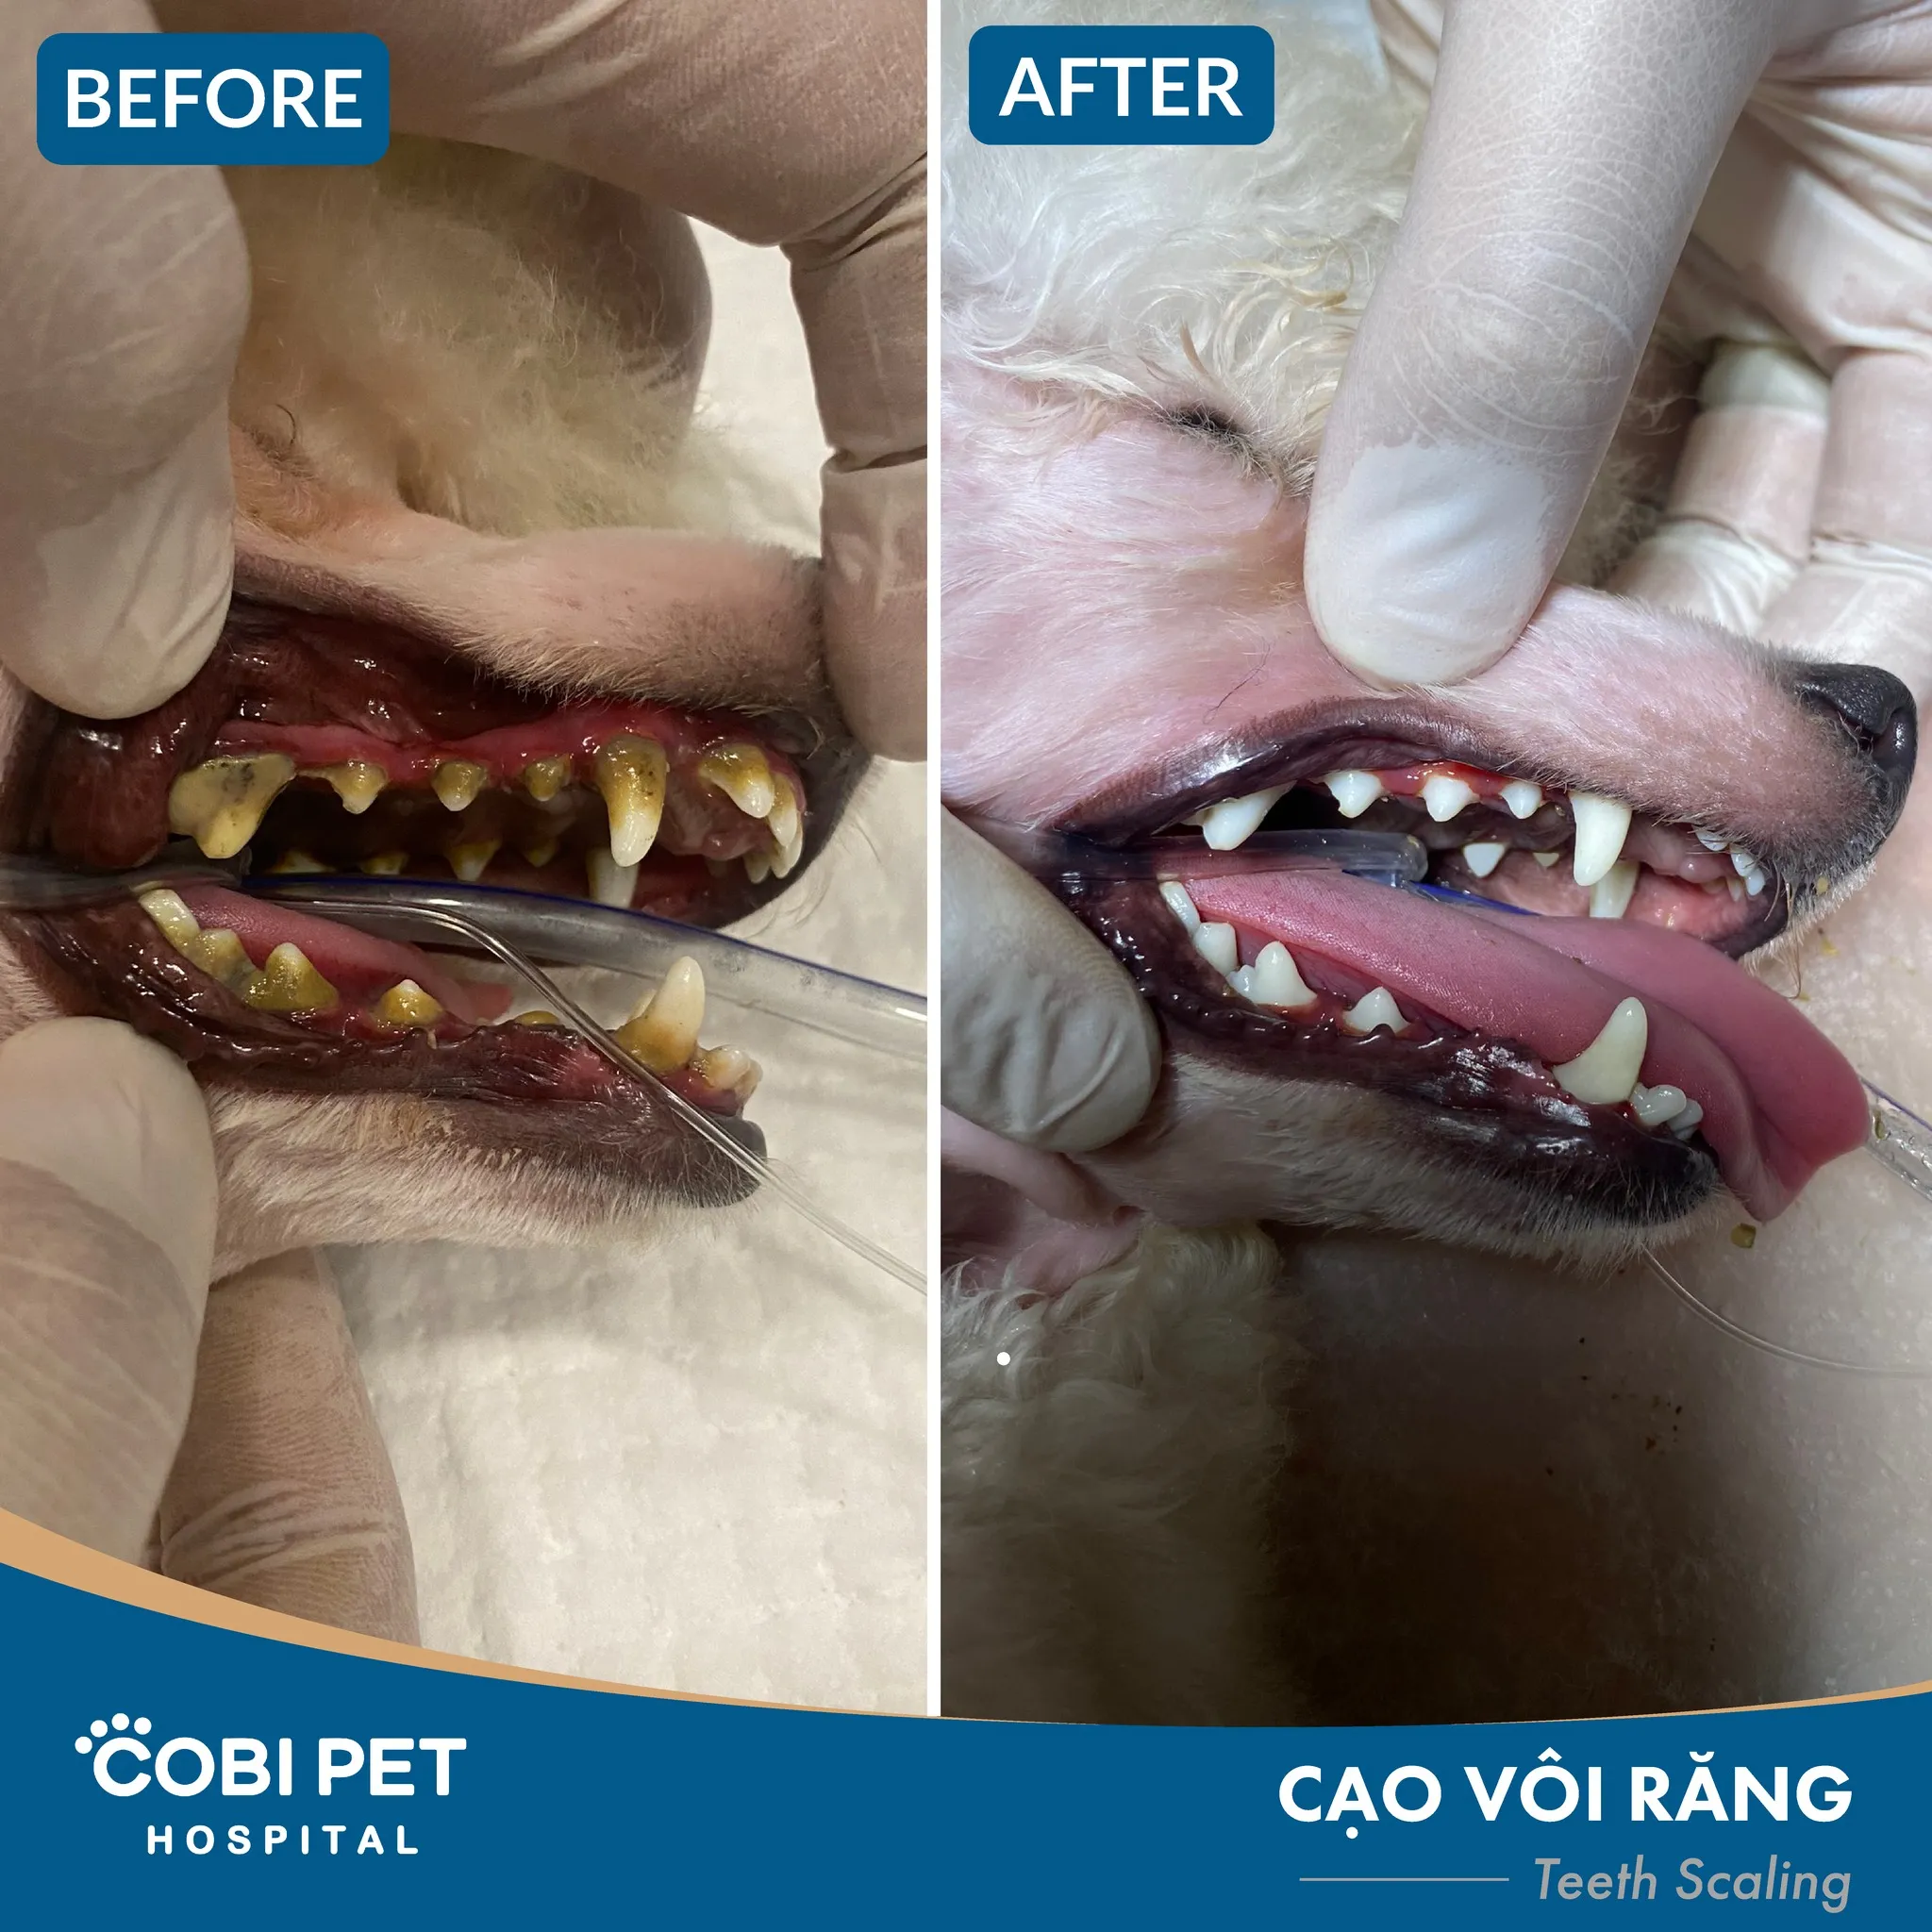 Cạo vôi răng tại Cobi Pet Hospital